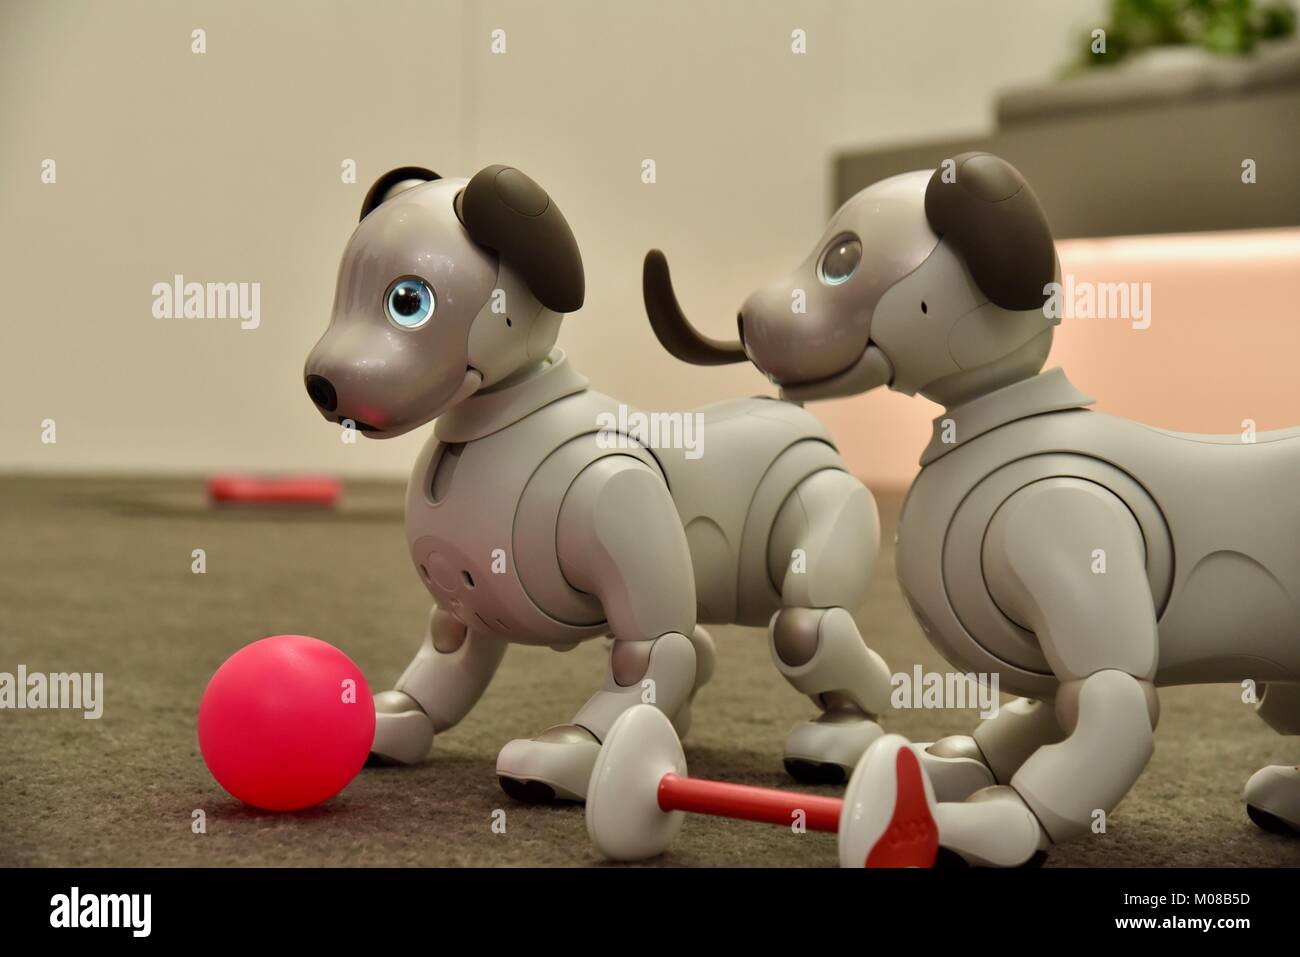 La nueva Sony, cute, adorable y costoso perro robot AIBO exhibido